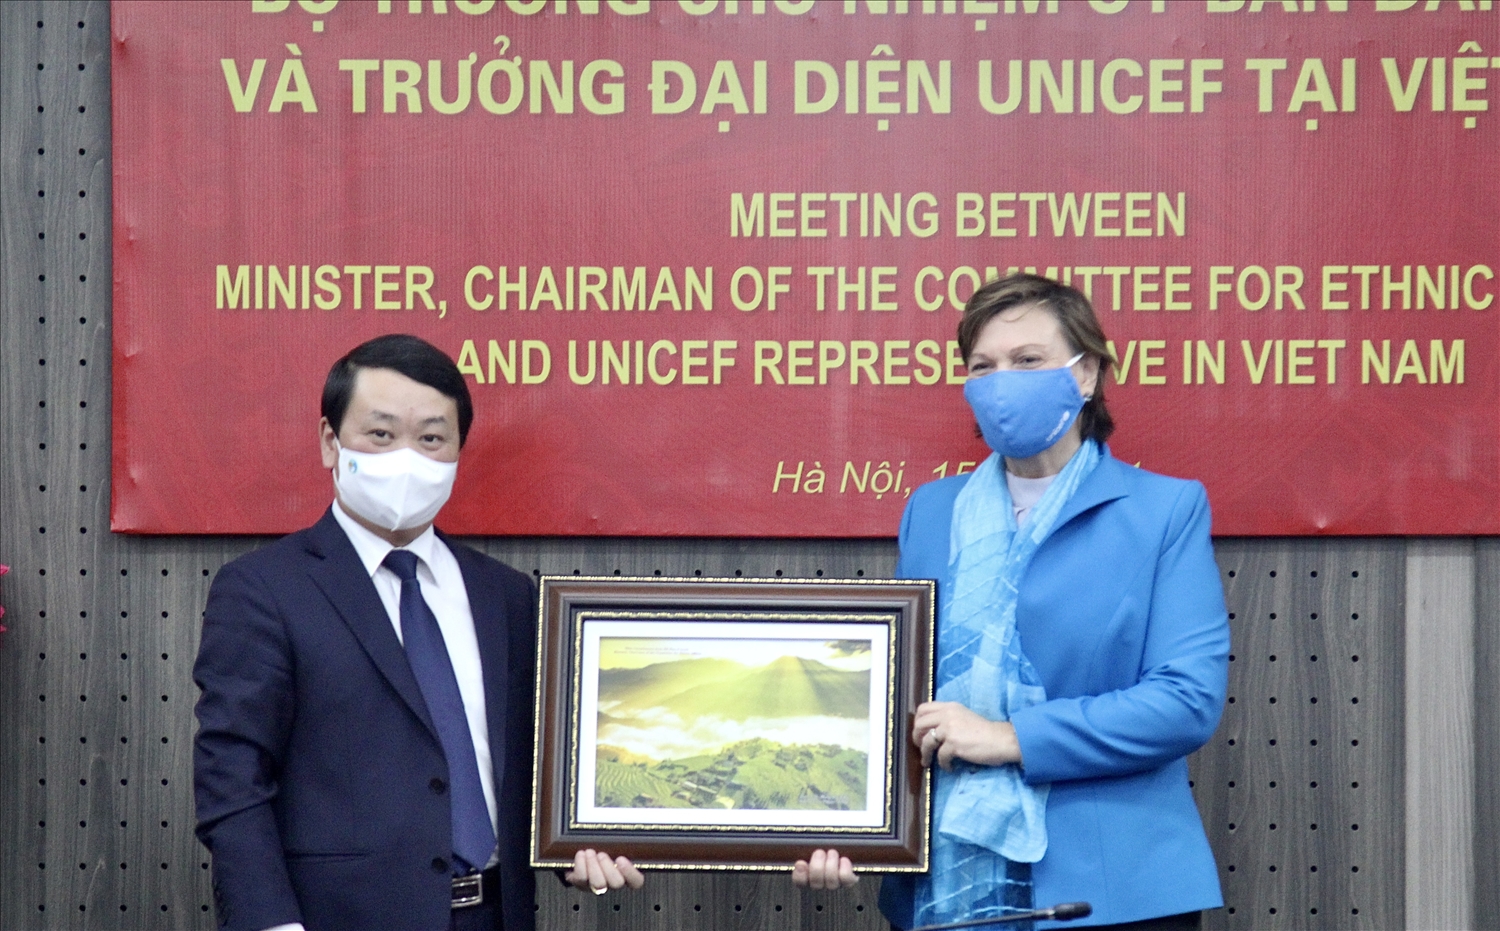 Bộ trưởng, Chủ nhiệm UBDT Hầu A Lềnh tặng quà lưu niệm của UBDT cho bà Rana Flowers, Trưởng đại diện UNICEF tại Việt Nam